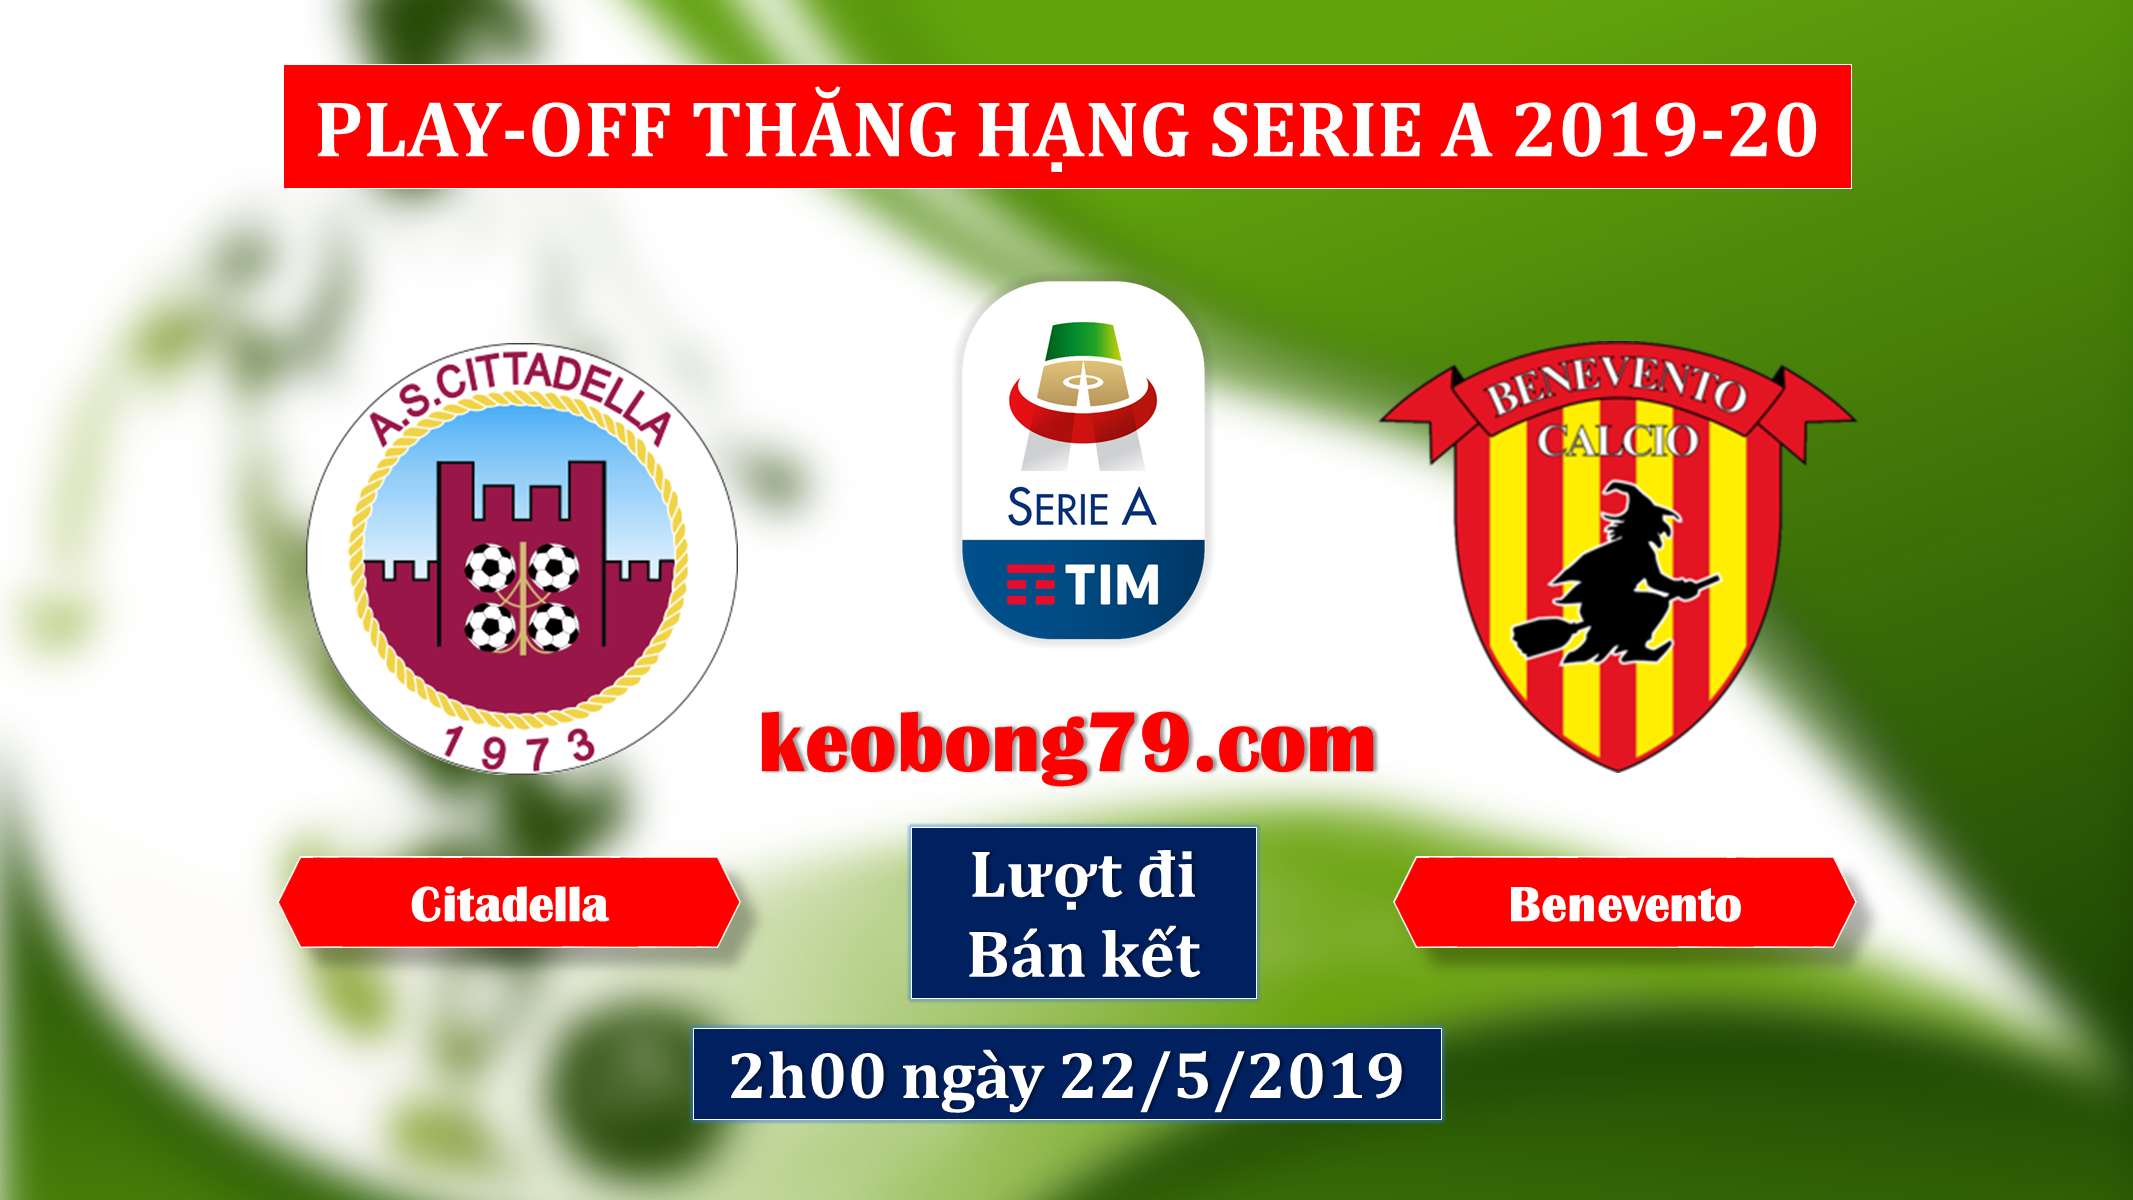 Nhận định soi kèo Cittadella vs Benevento – 2h00 ngày 22/5/2019